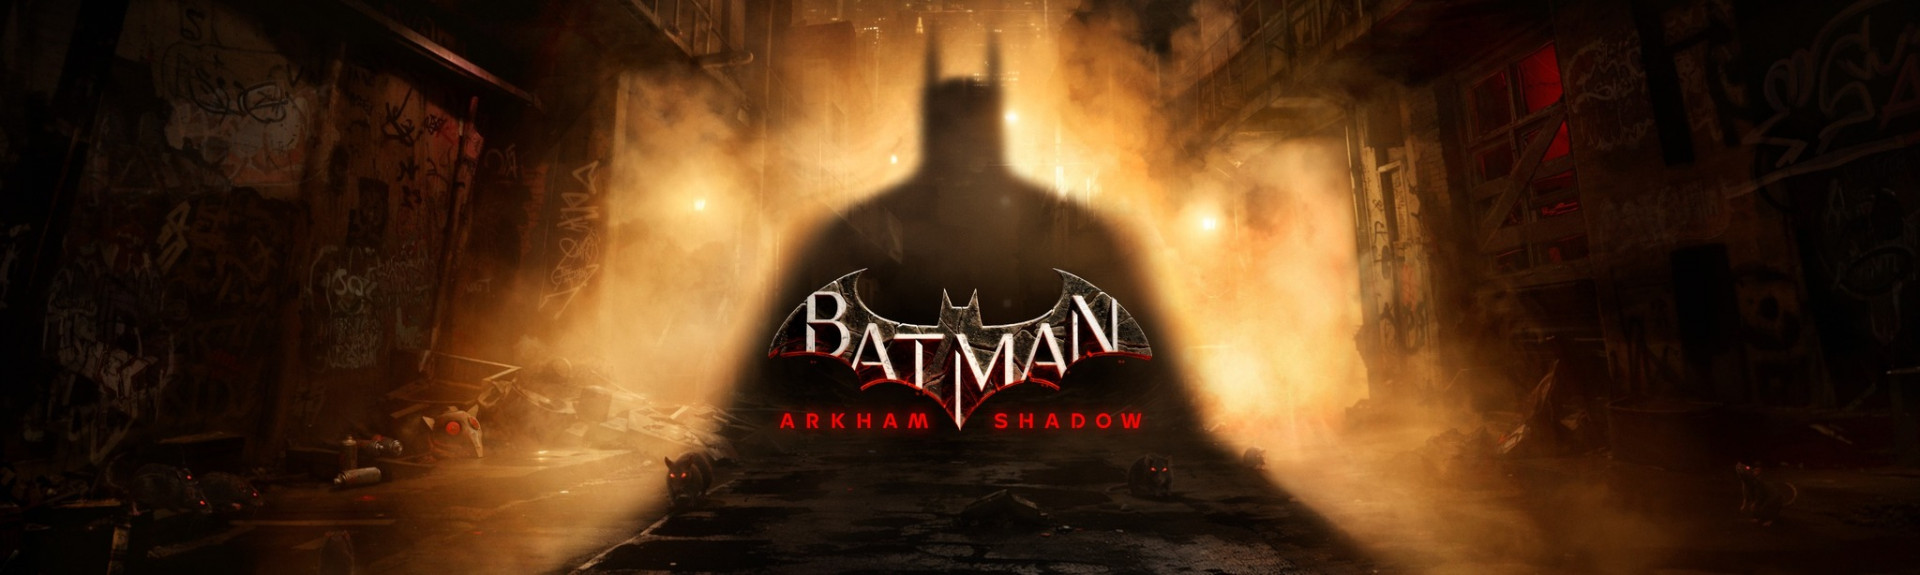 Batman: Arkham Shadow será un juego exclusivo para Quest 3